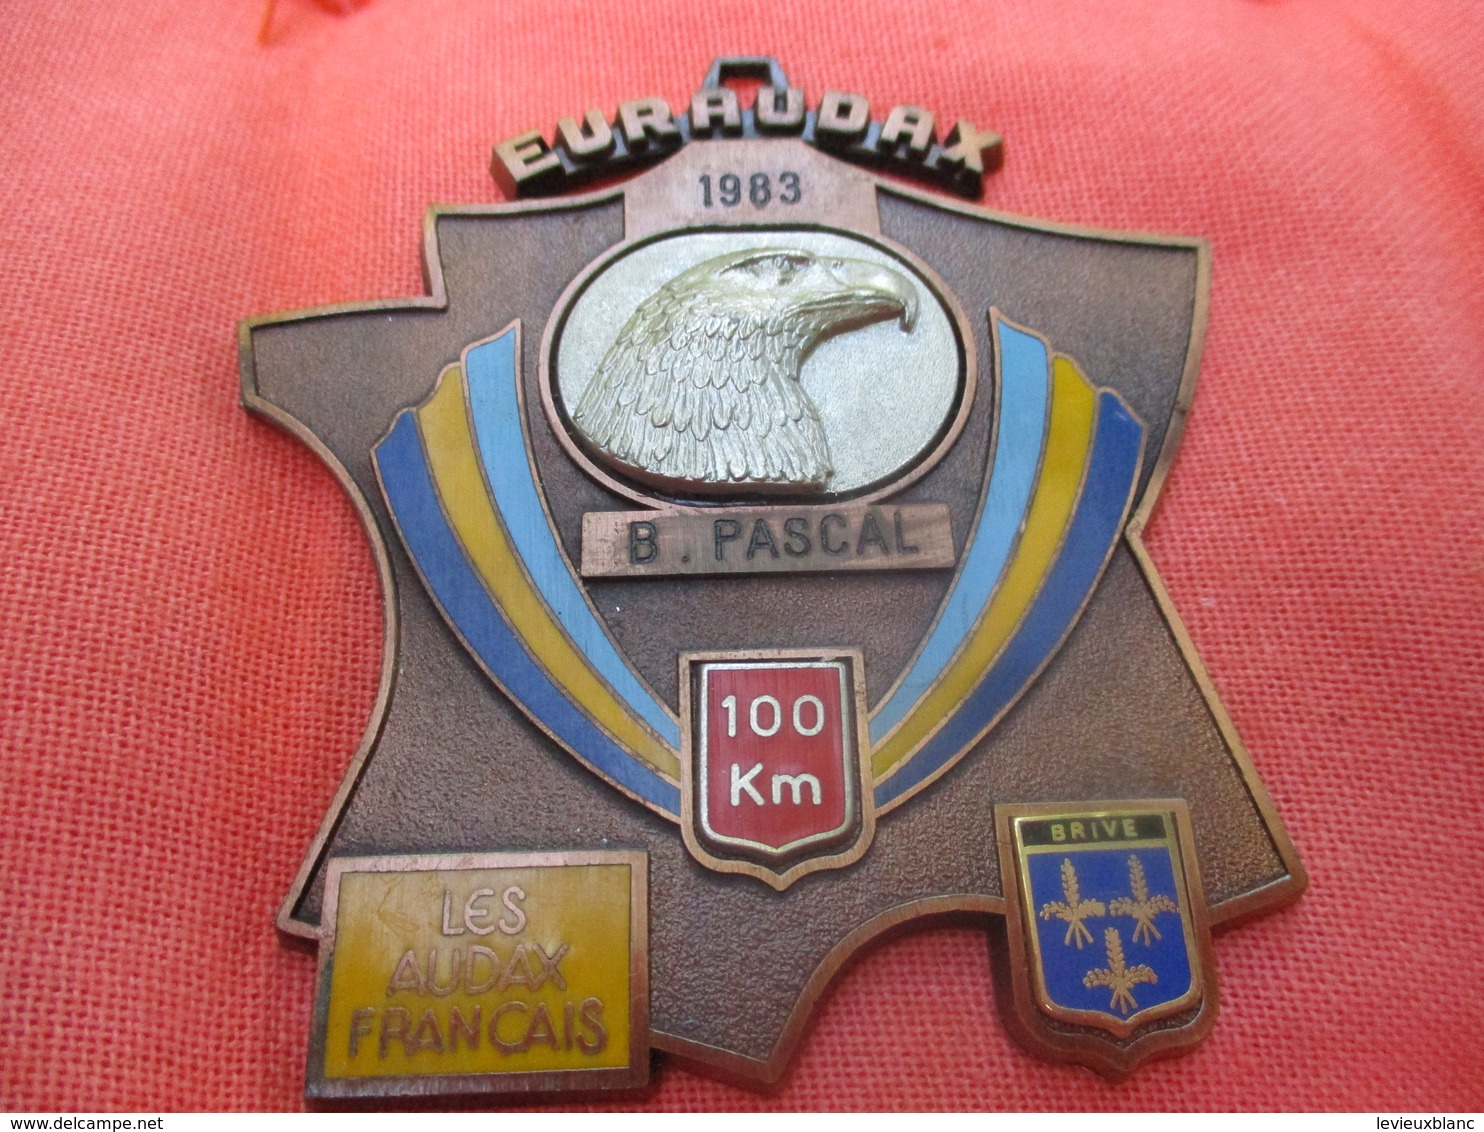 Médaille De Sport/Cyclisme/ EURAUDAX/100 KM/ / BRIVE/Les Audax Français/1983    SPO291 - Radsport